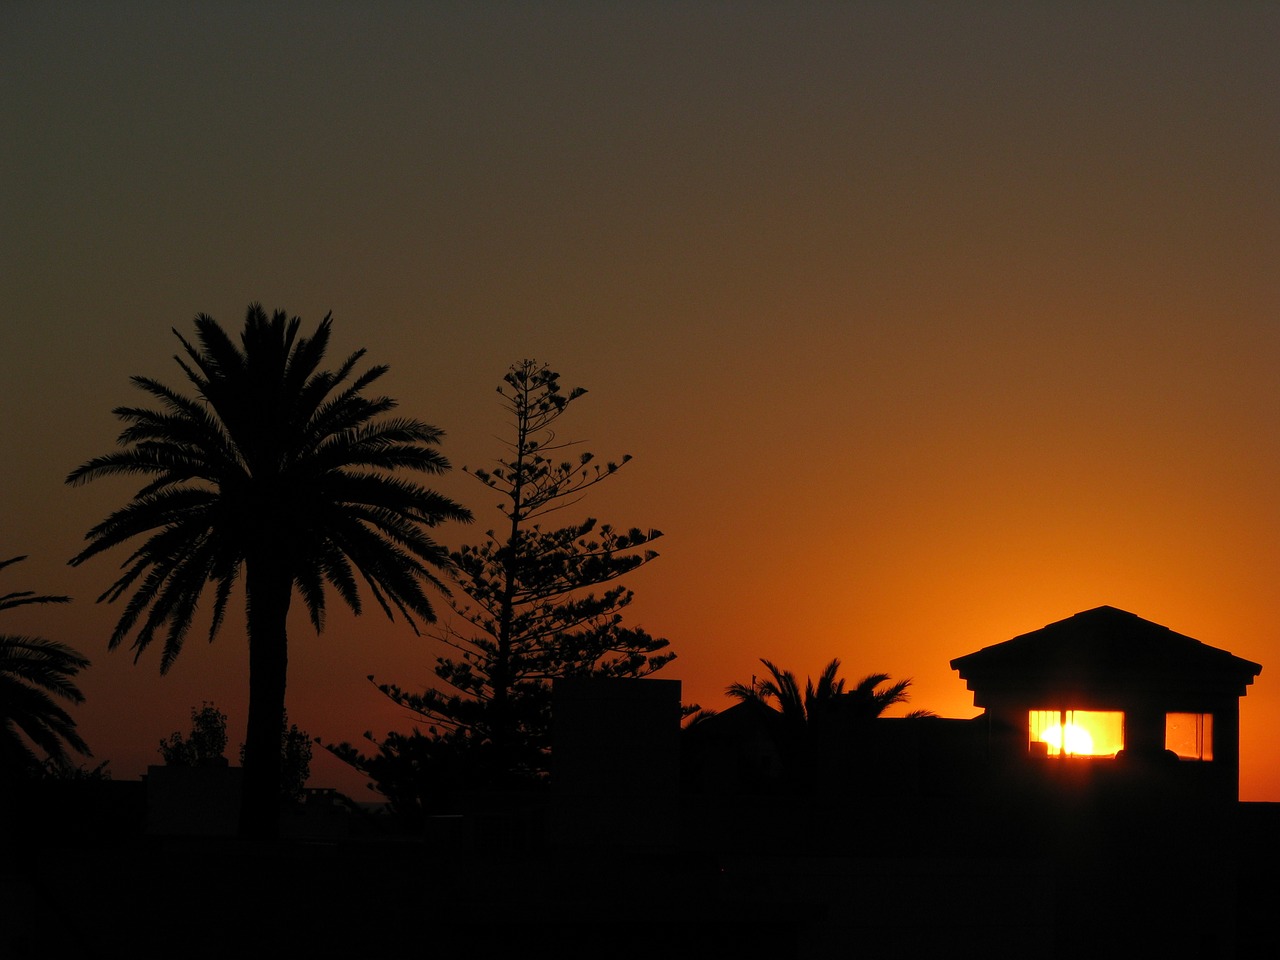 punta del este sunset uruguay free photo